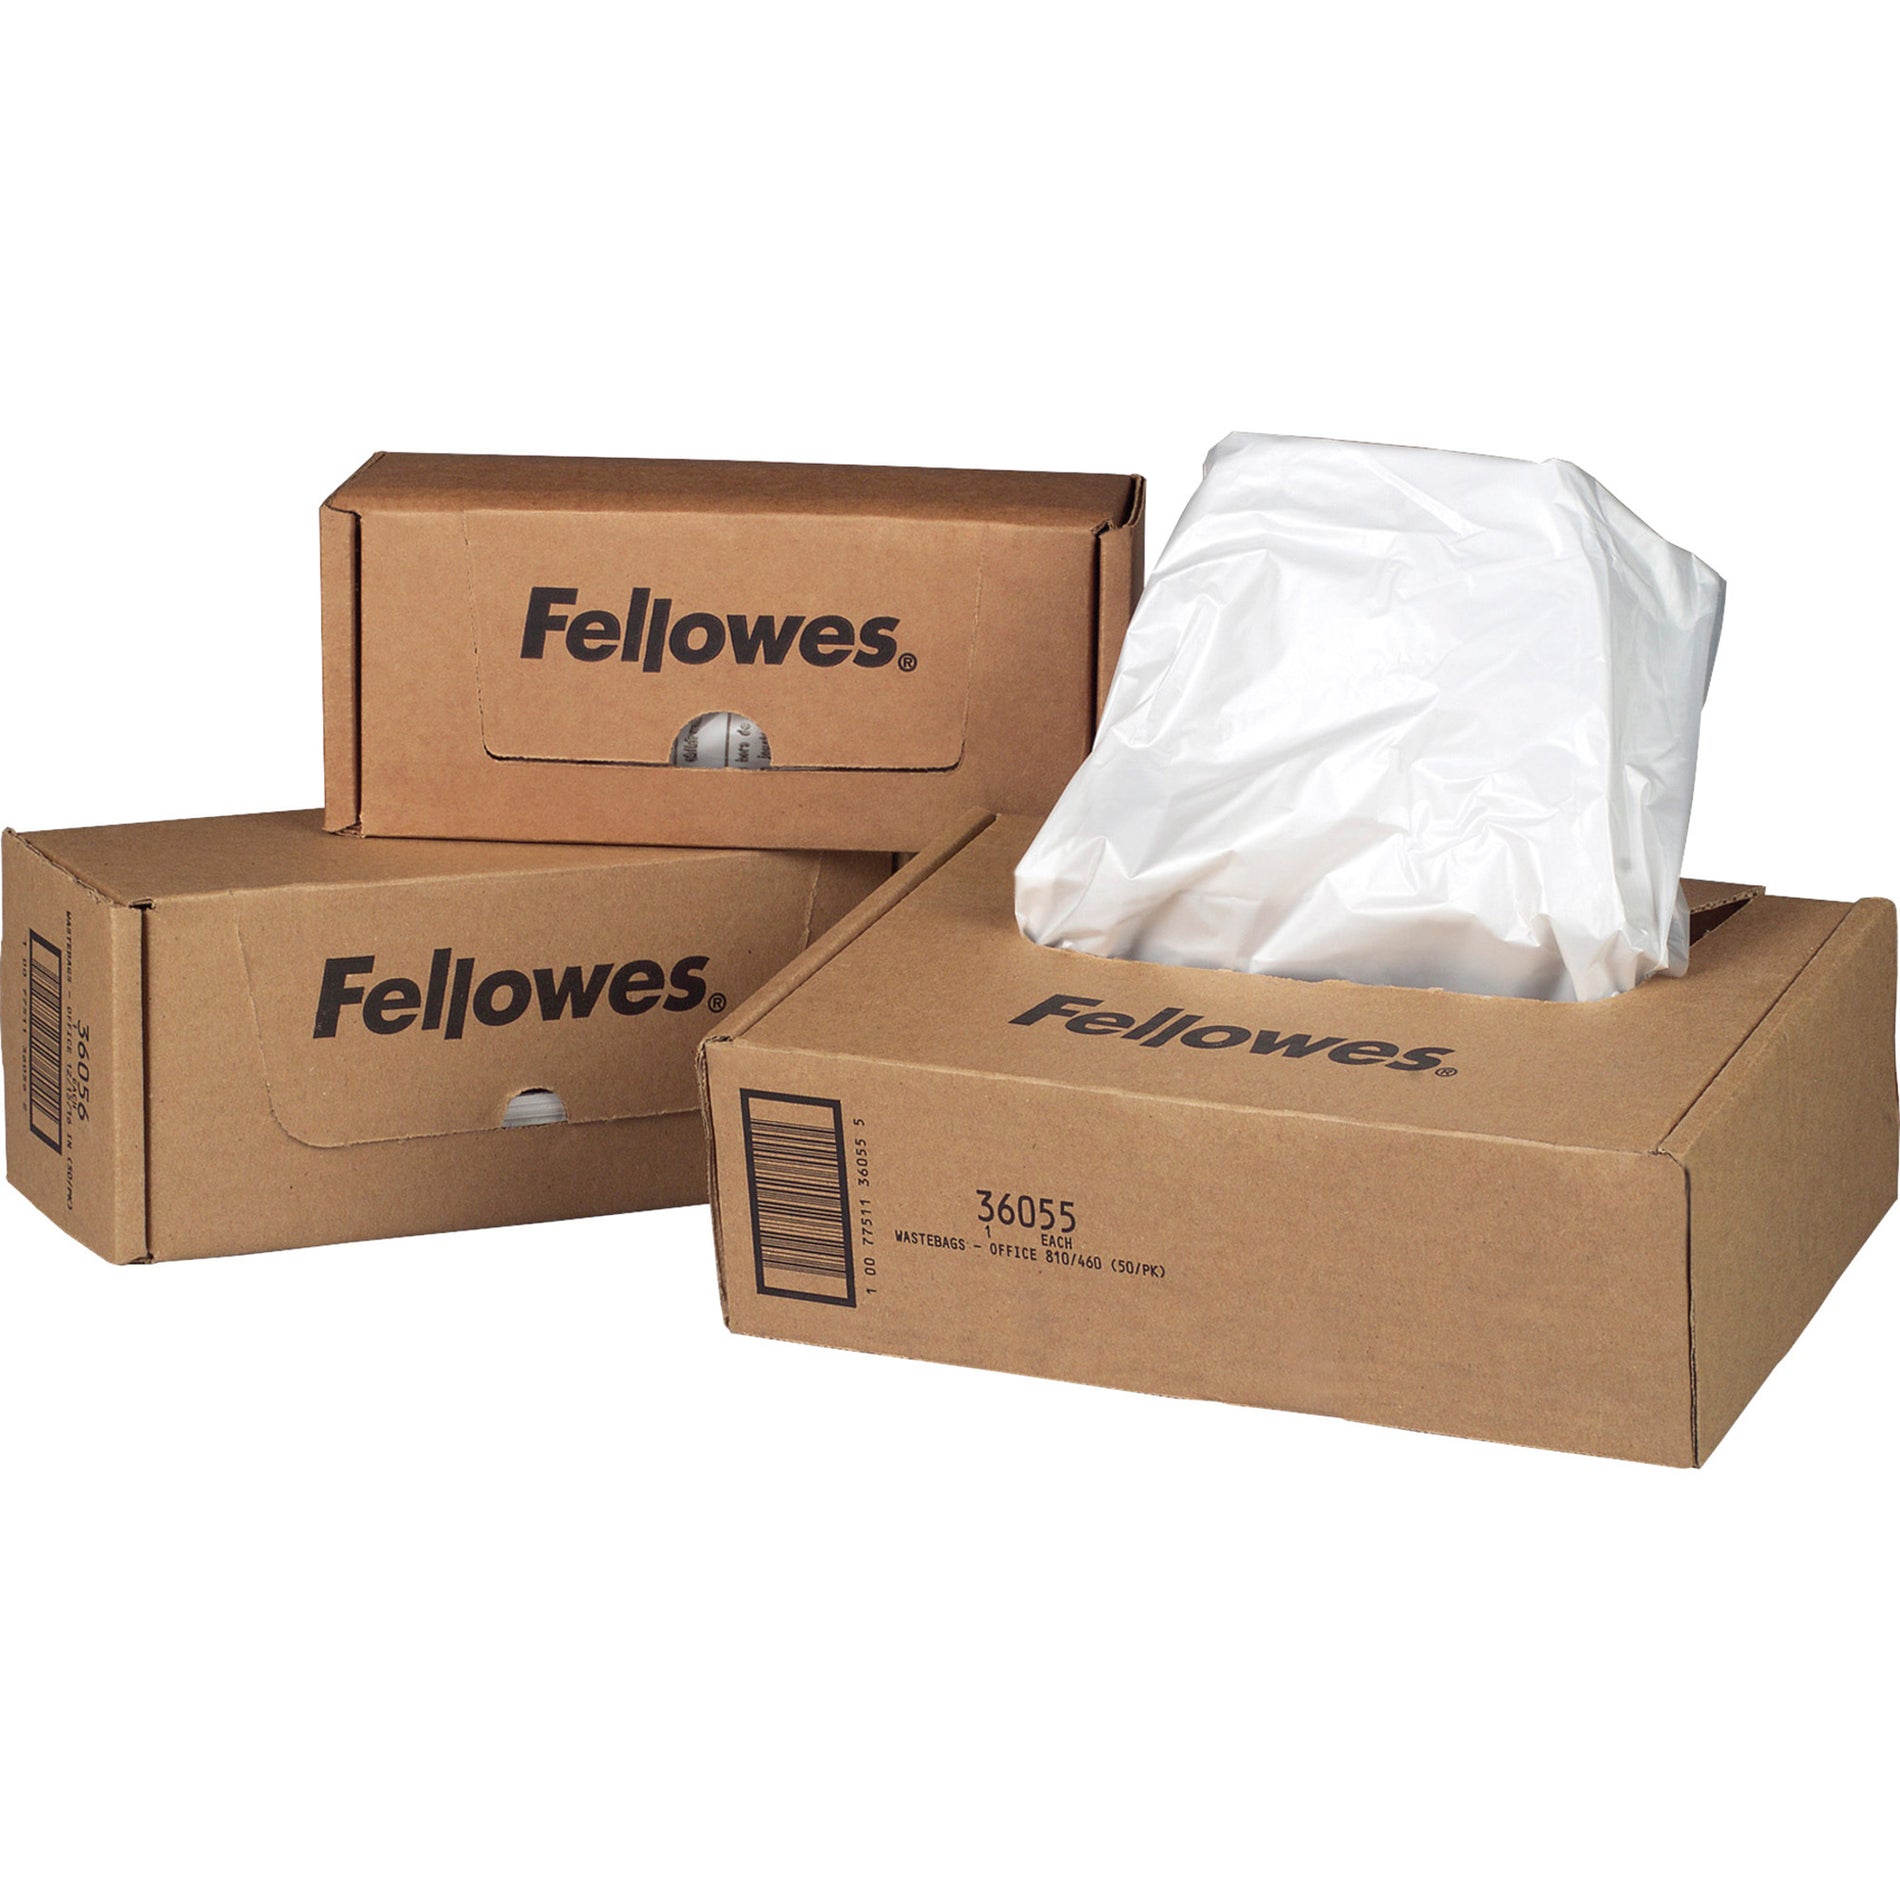 Bolsas de desechos triturados Fellowes 36054 de la serie 125/225/2250 duraderas desechables reciclables capacidad de 20 galones